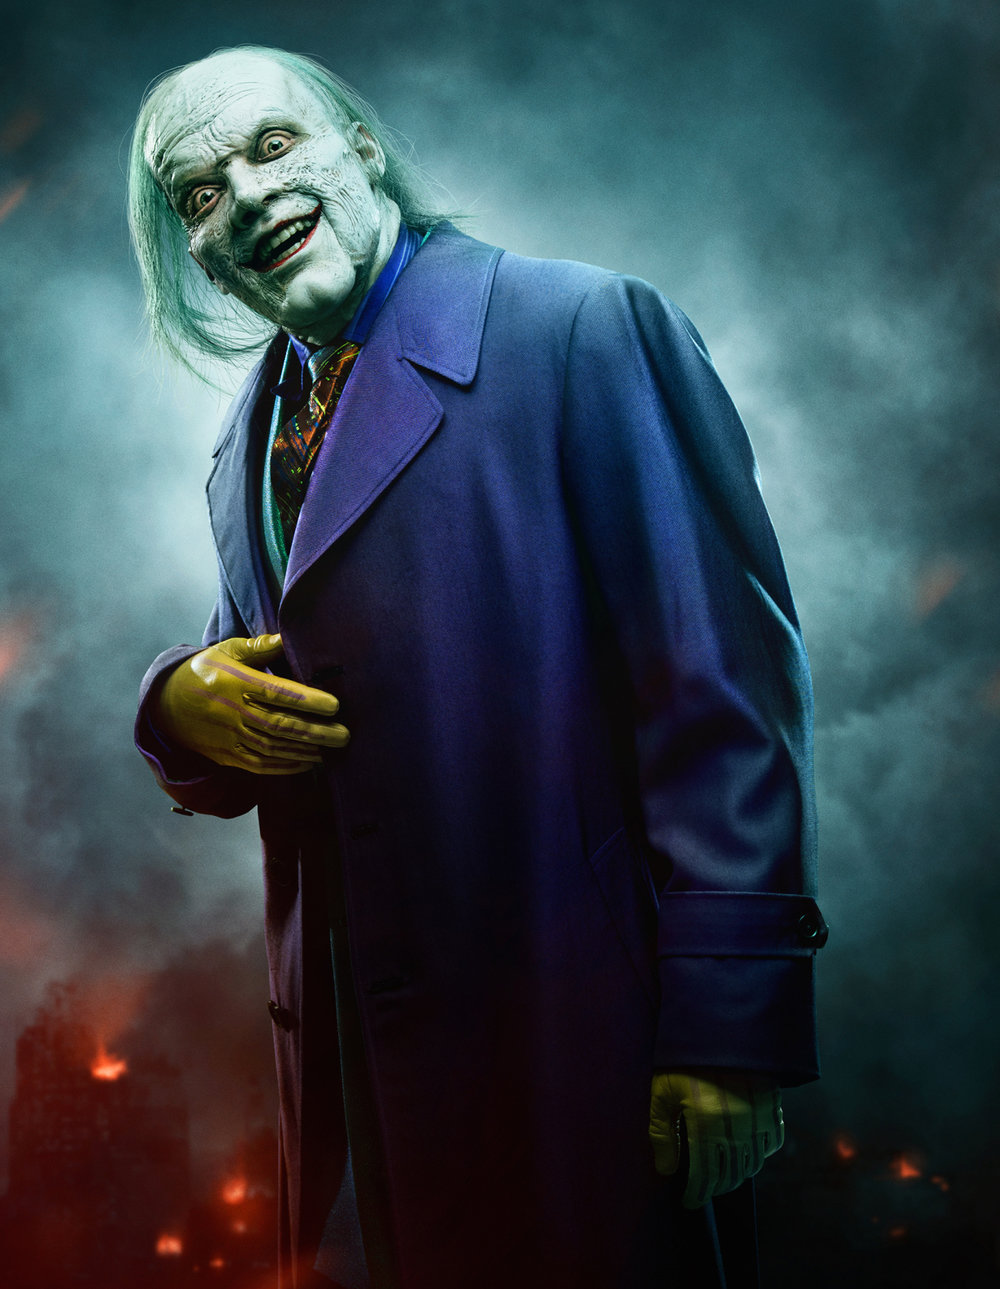 La apariencia final de The Joker en GOTHAM ha sido revelada;  Â¡Mira un nuevo teaser y dinos lo que piensas!